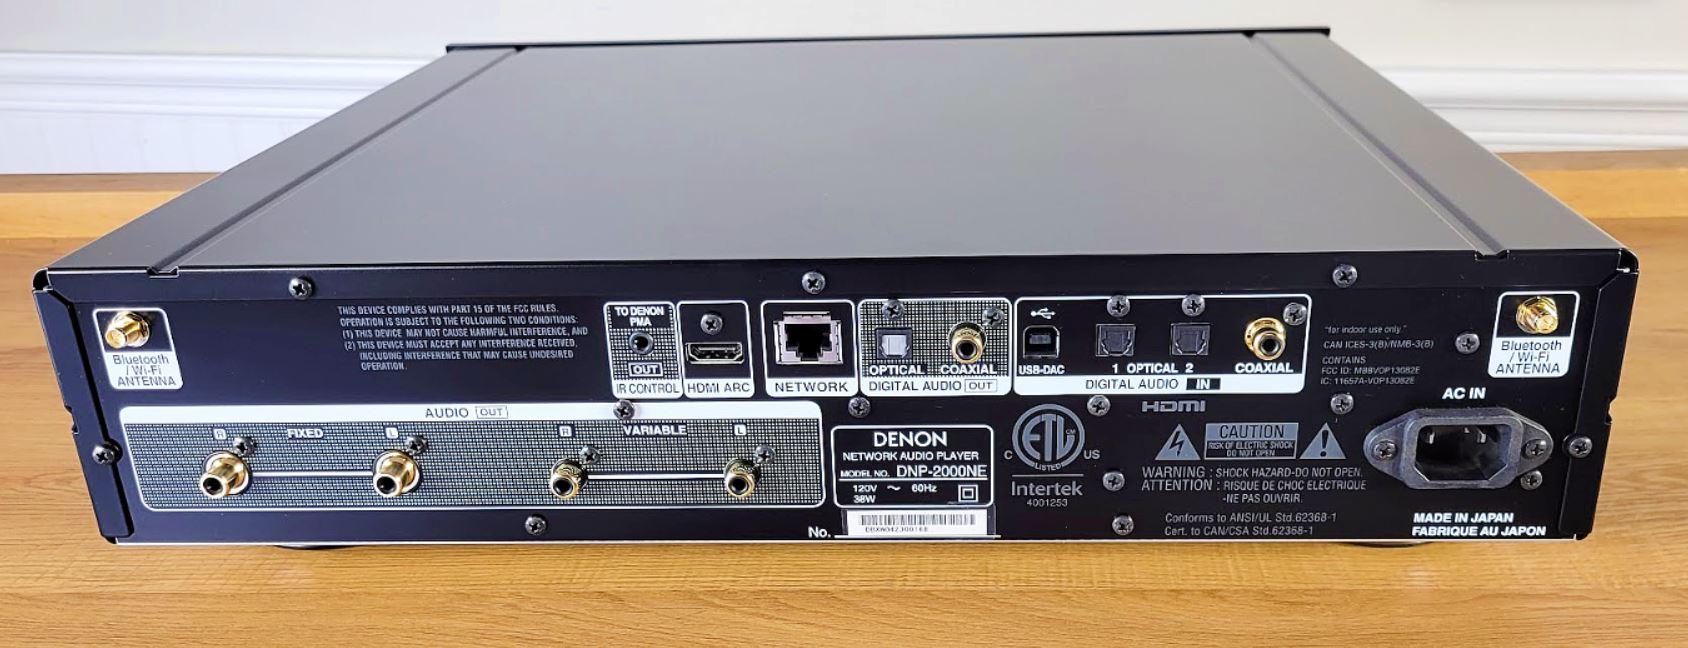 Denon DNP 2000NE Network Player back ports